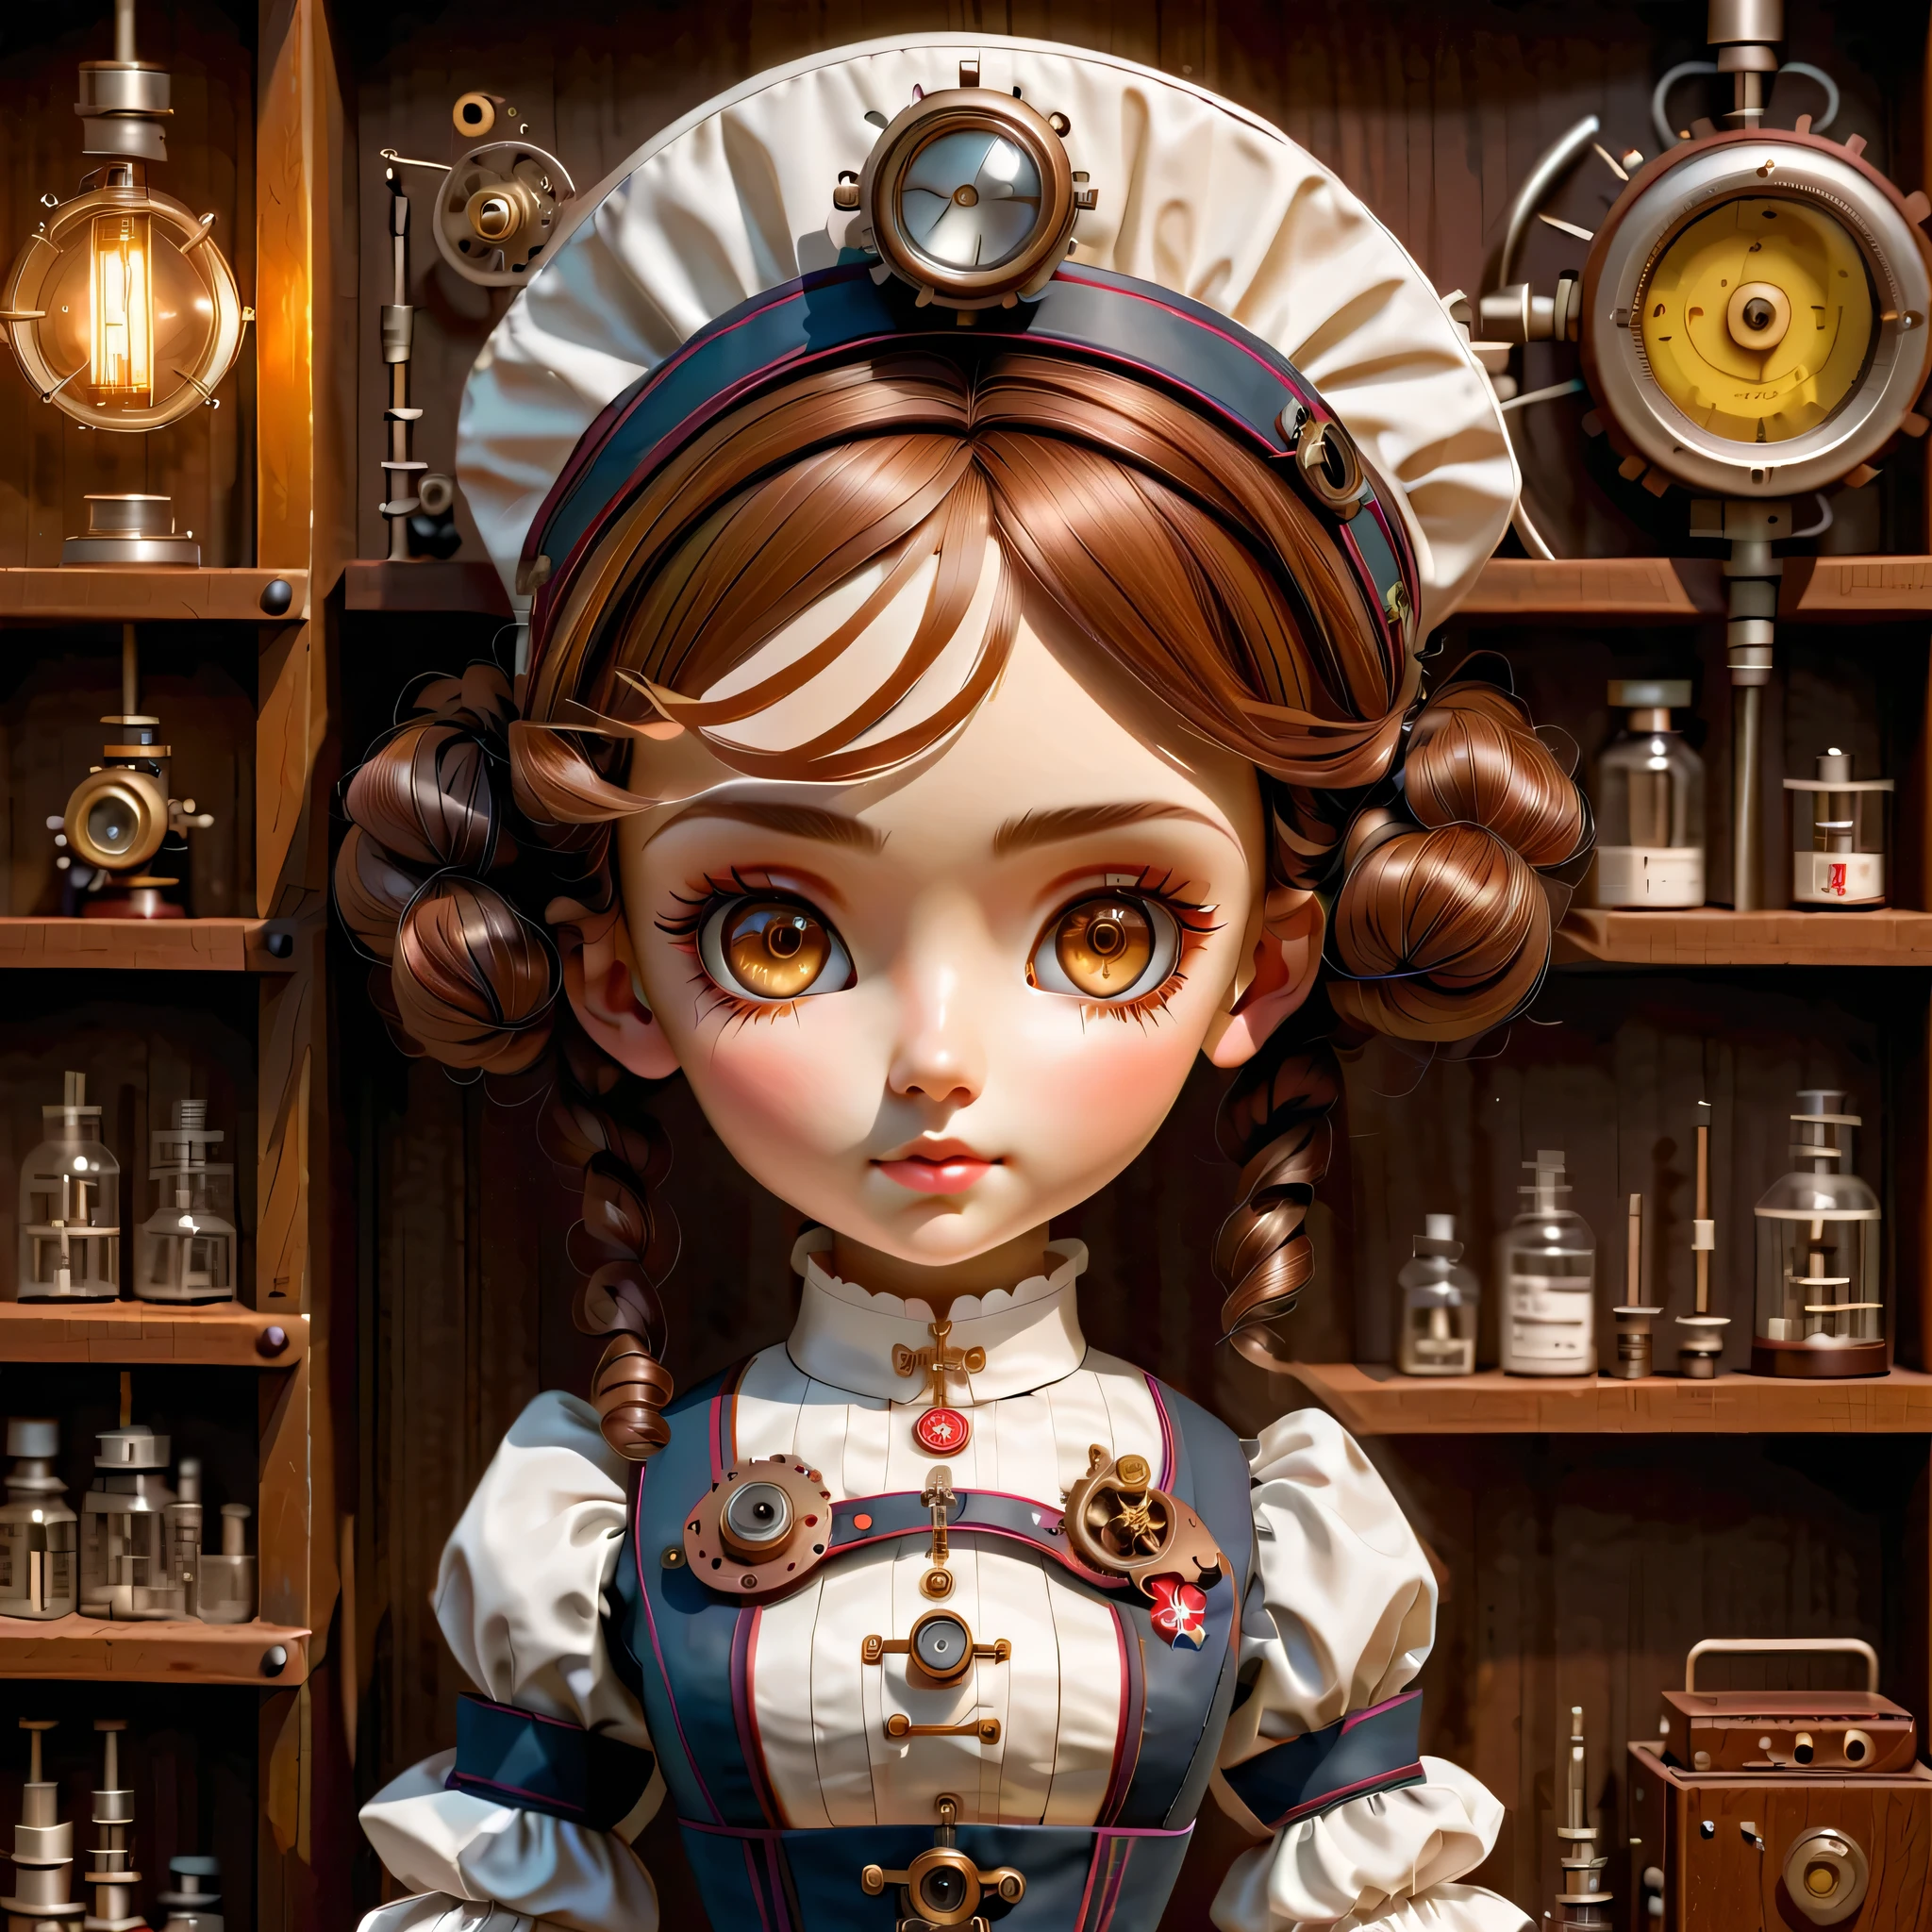 机制:人形生物:護士:16th century European 護士 uniform,娃娃臉:完美的臉:棕色的大眼睛,睫毛,隱藏髮絲,她是由機器製成的,蒸汽朋克元素,机械的 engineering,机械的ly,机械的,流行音樂,可愛的,錯綜複雜的細節,很好,高解析度,高品質,最高品質,清楚地,清楚,美麗的光影,三个维度,可愛的外表,複雜的配置,机制,動態的,忙碌的,努力工作,讓人想要支持的表達方式,醫用器材,醫療用品貨架,小瓶,提出證據證明它是一台機器,窗外的光,角色设计表